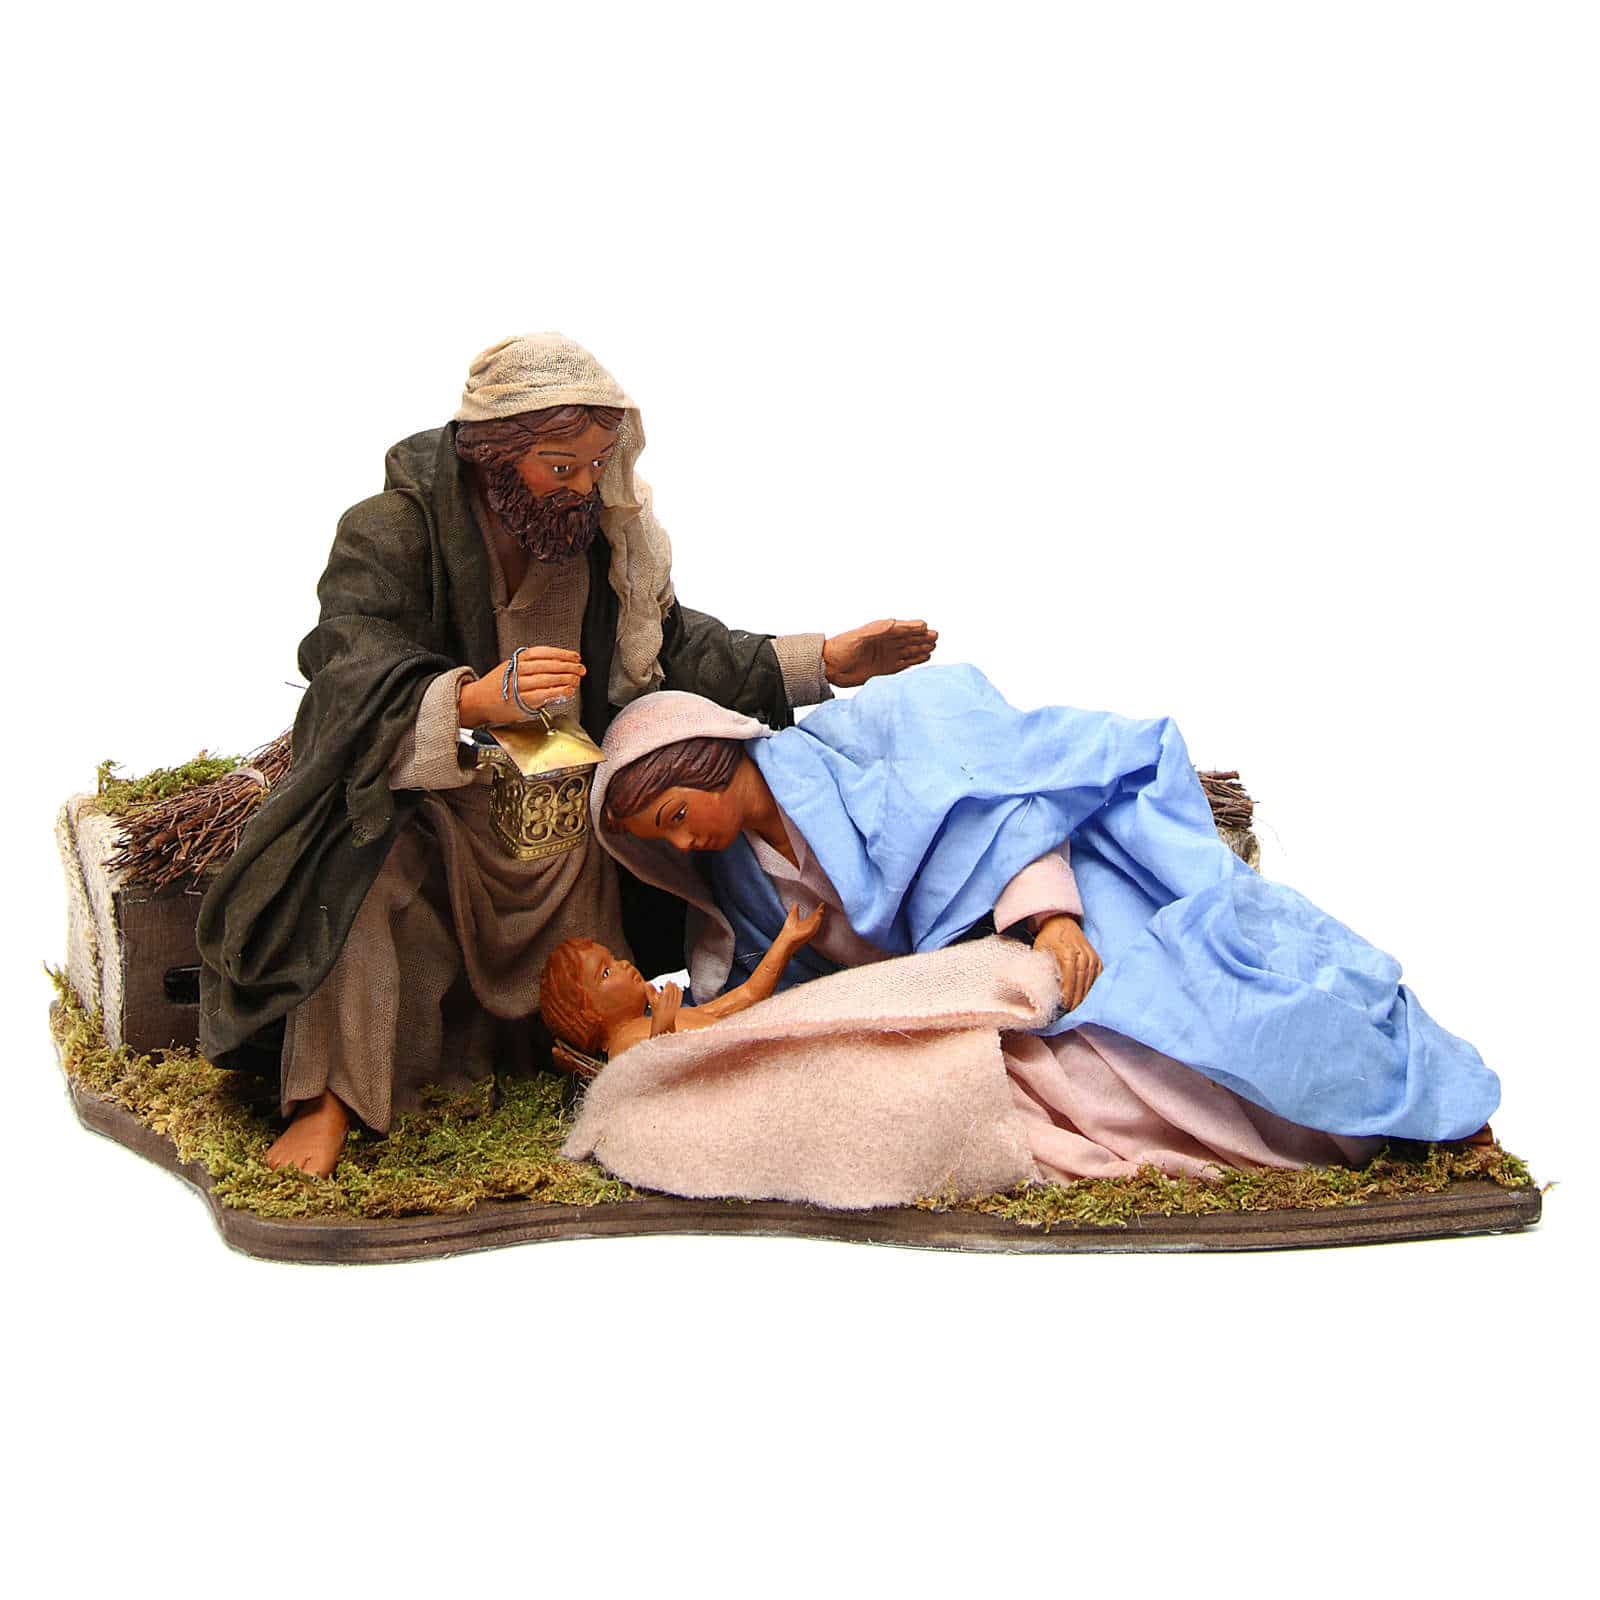 Belén napolitano, escena de la virgen acostada con el niño Jesús